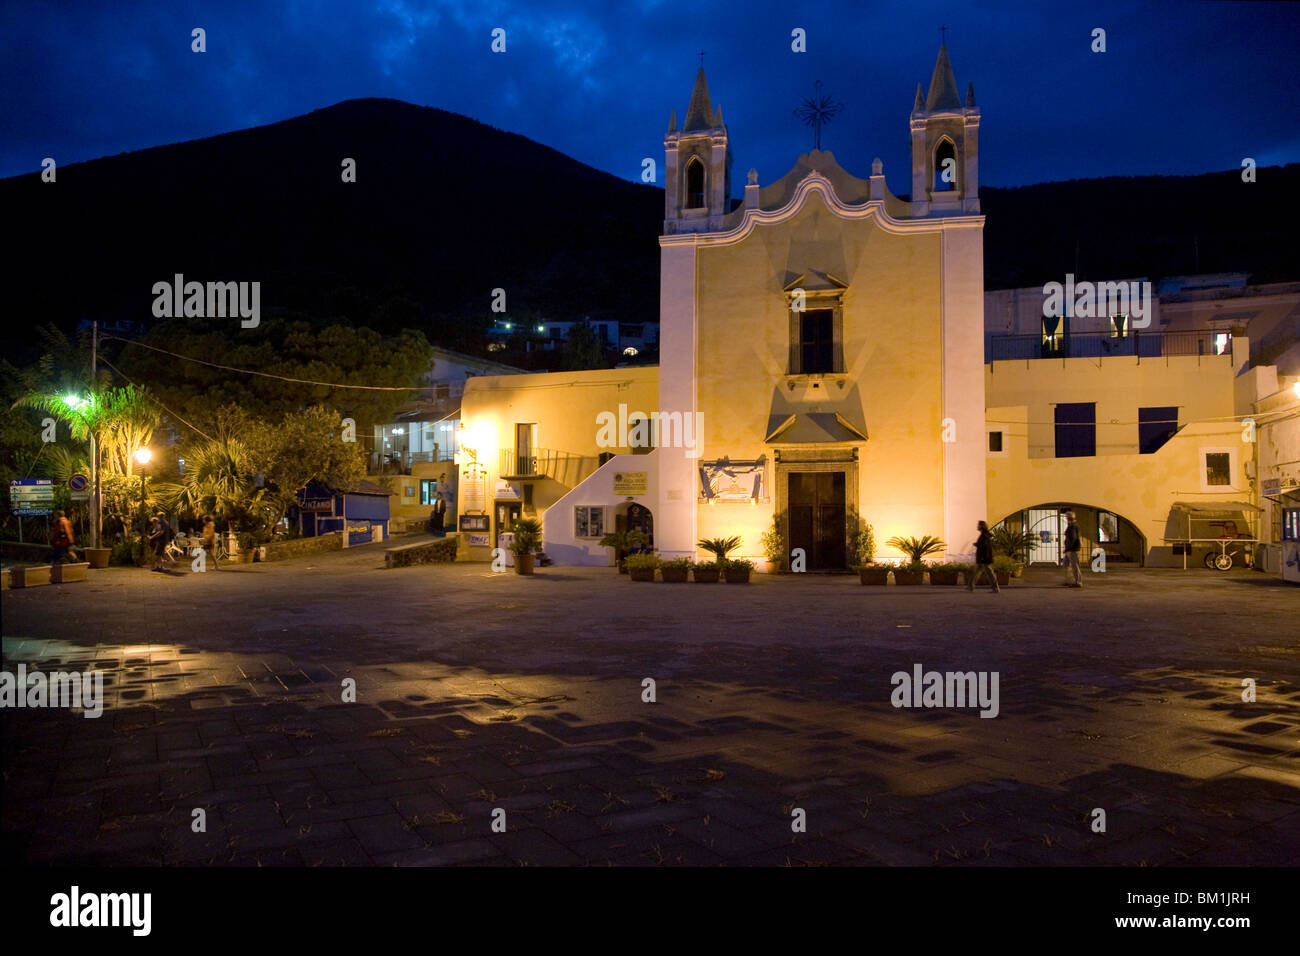 Santa Marina Village, Salina Island, Messina, Sicily, Italy, Europe Stock Photo